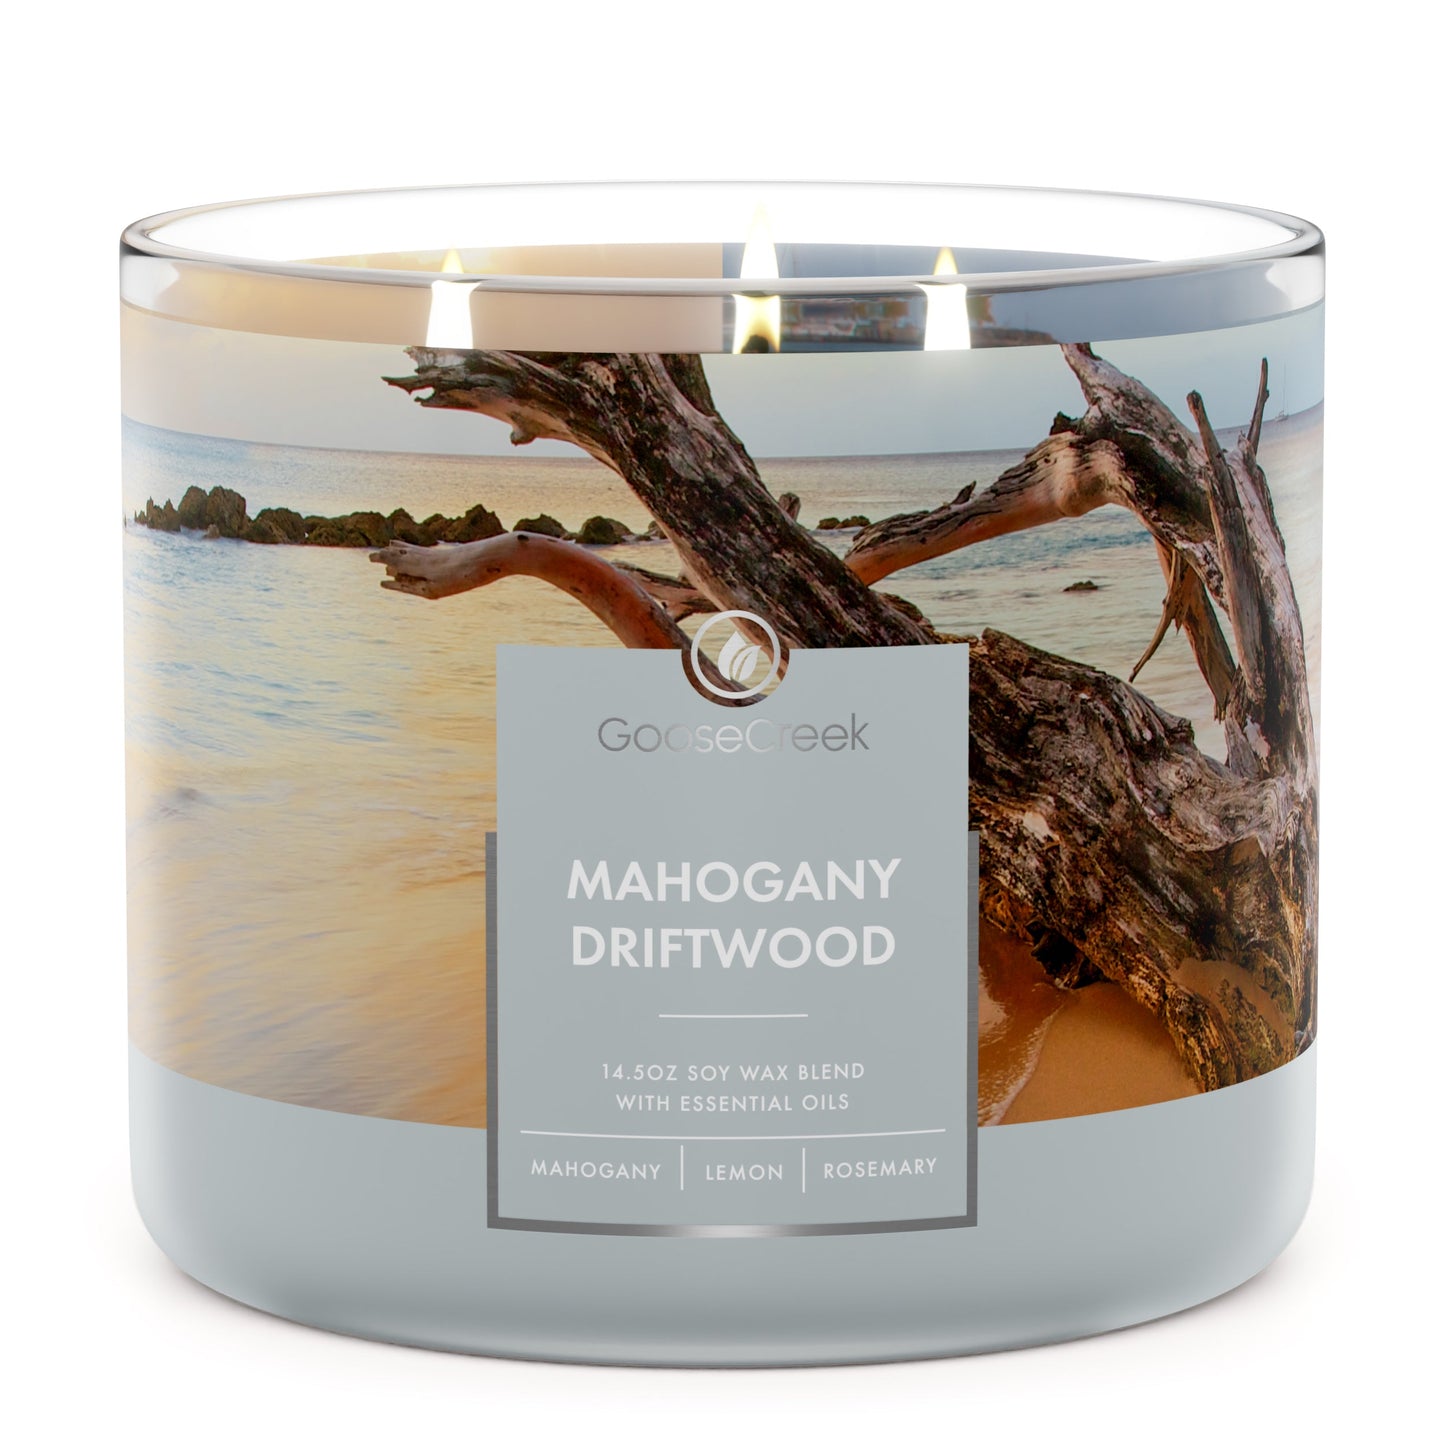 NEW! MAHOGANY + TEAKWOOD – Woods Creek Candles